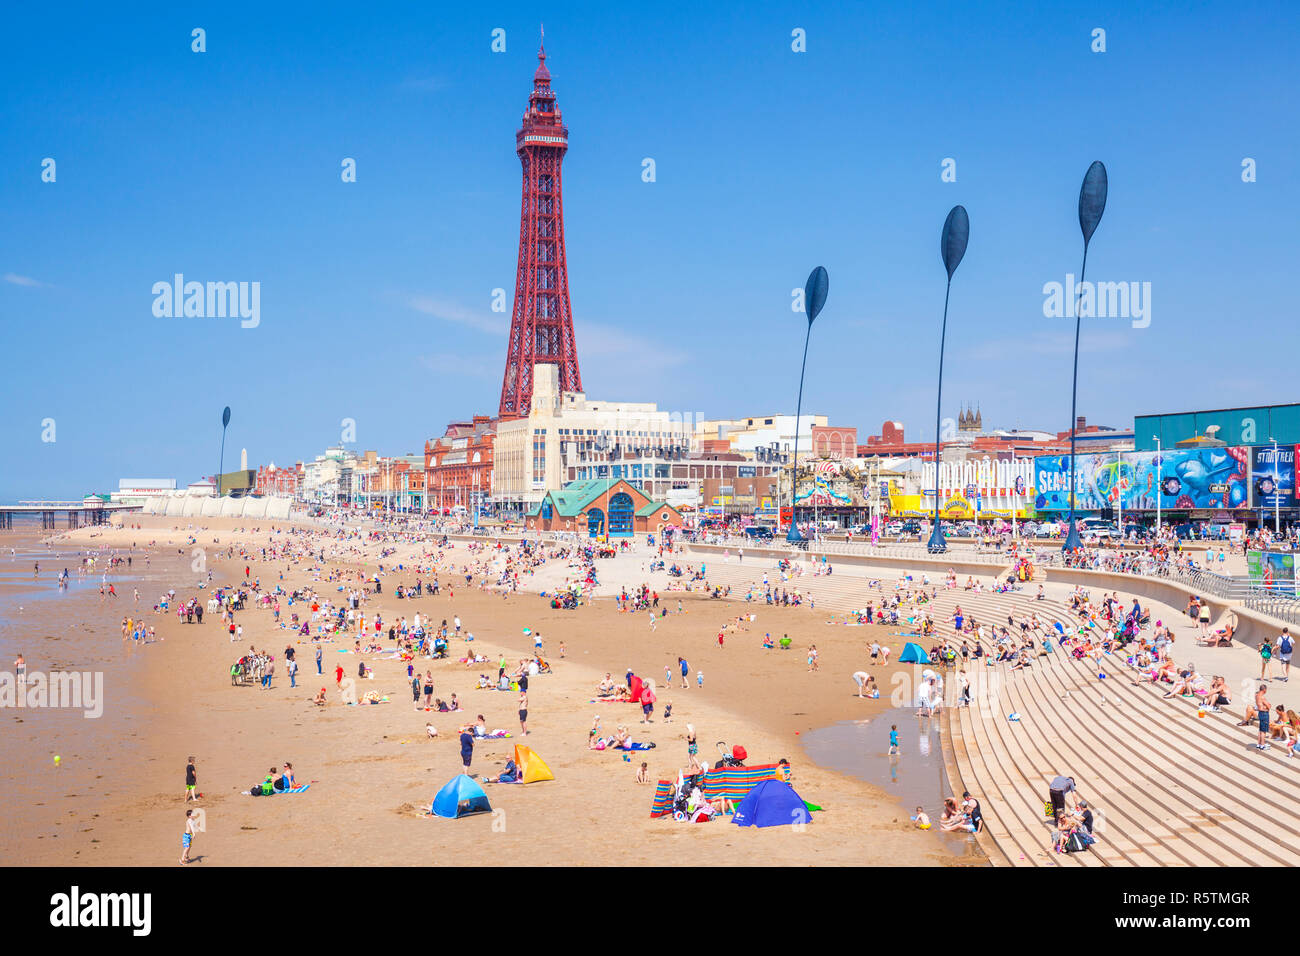 La promenade de la plage de Blackpool Blackpool Tower et Blackpool étapes uk l'été avec les gens sur la plage de sable du Blackpool Lancashire England UK GO Europe Banque D'Images